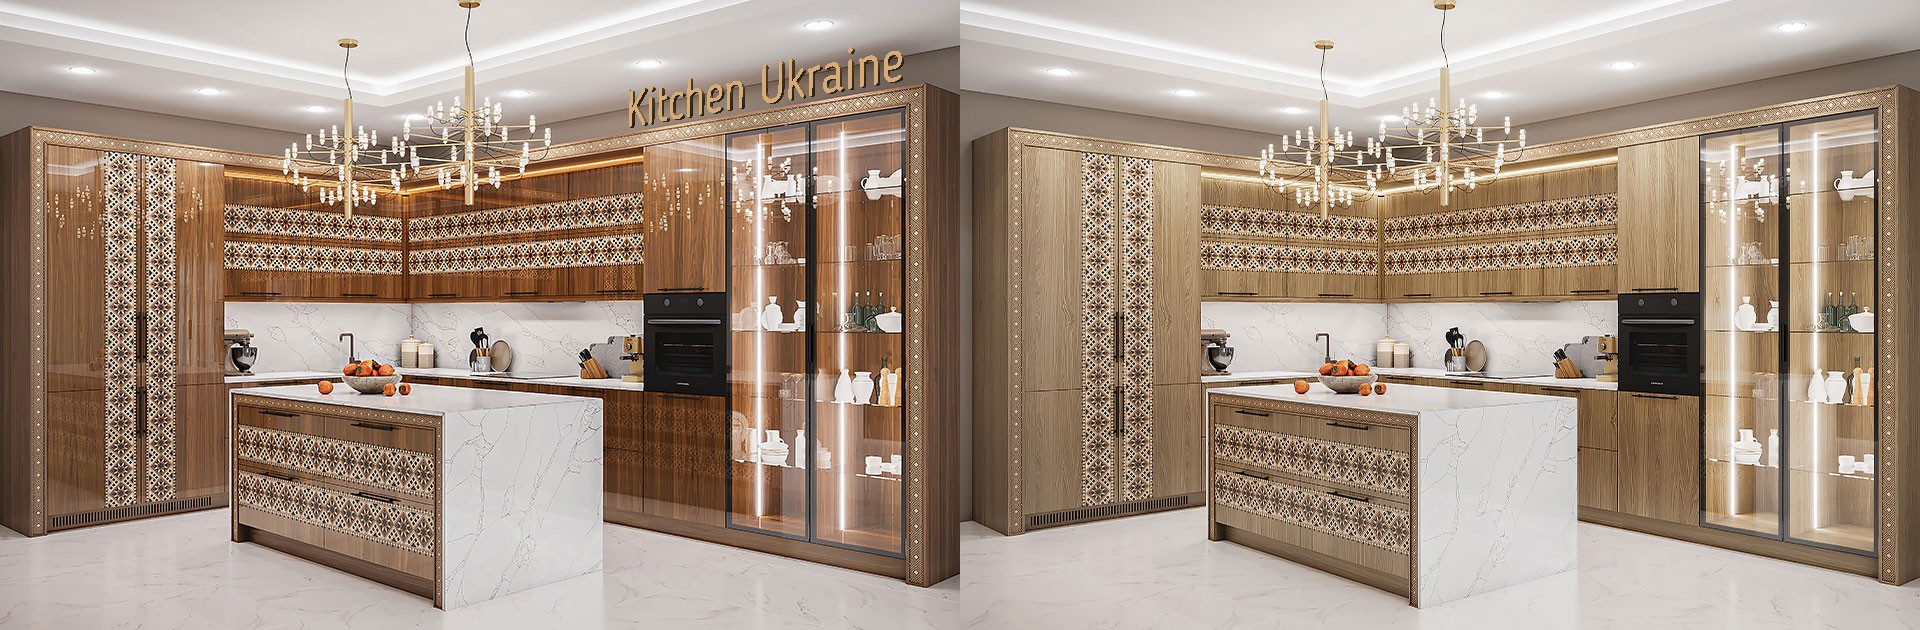 Дизайнерская кухня с фасадами со шпоном и интарсией в украинском стиле